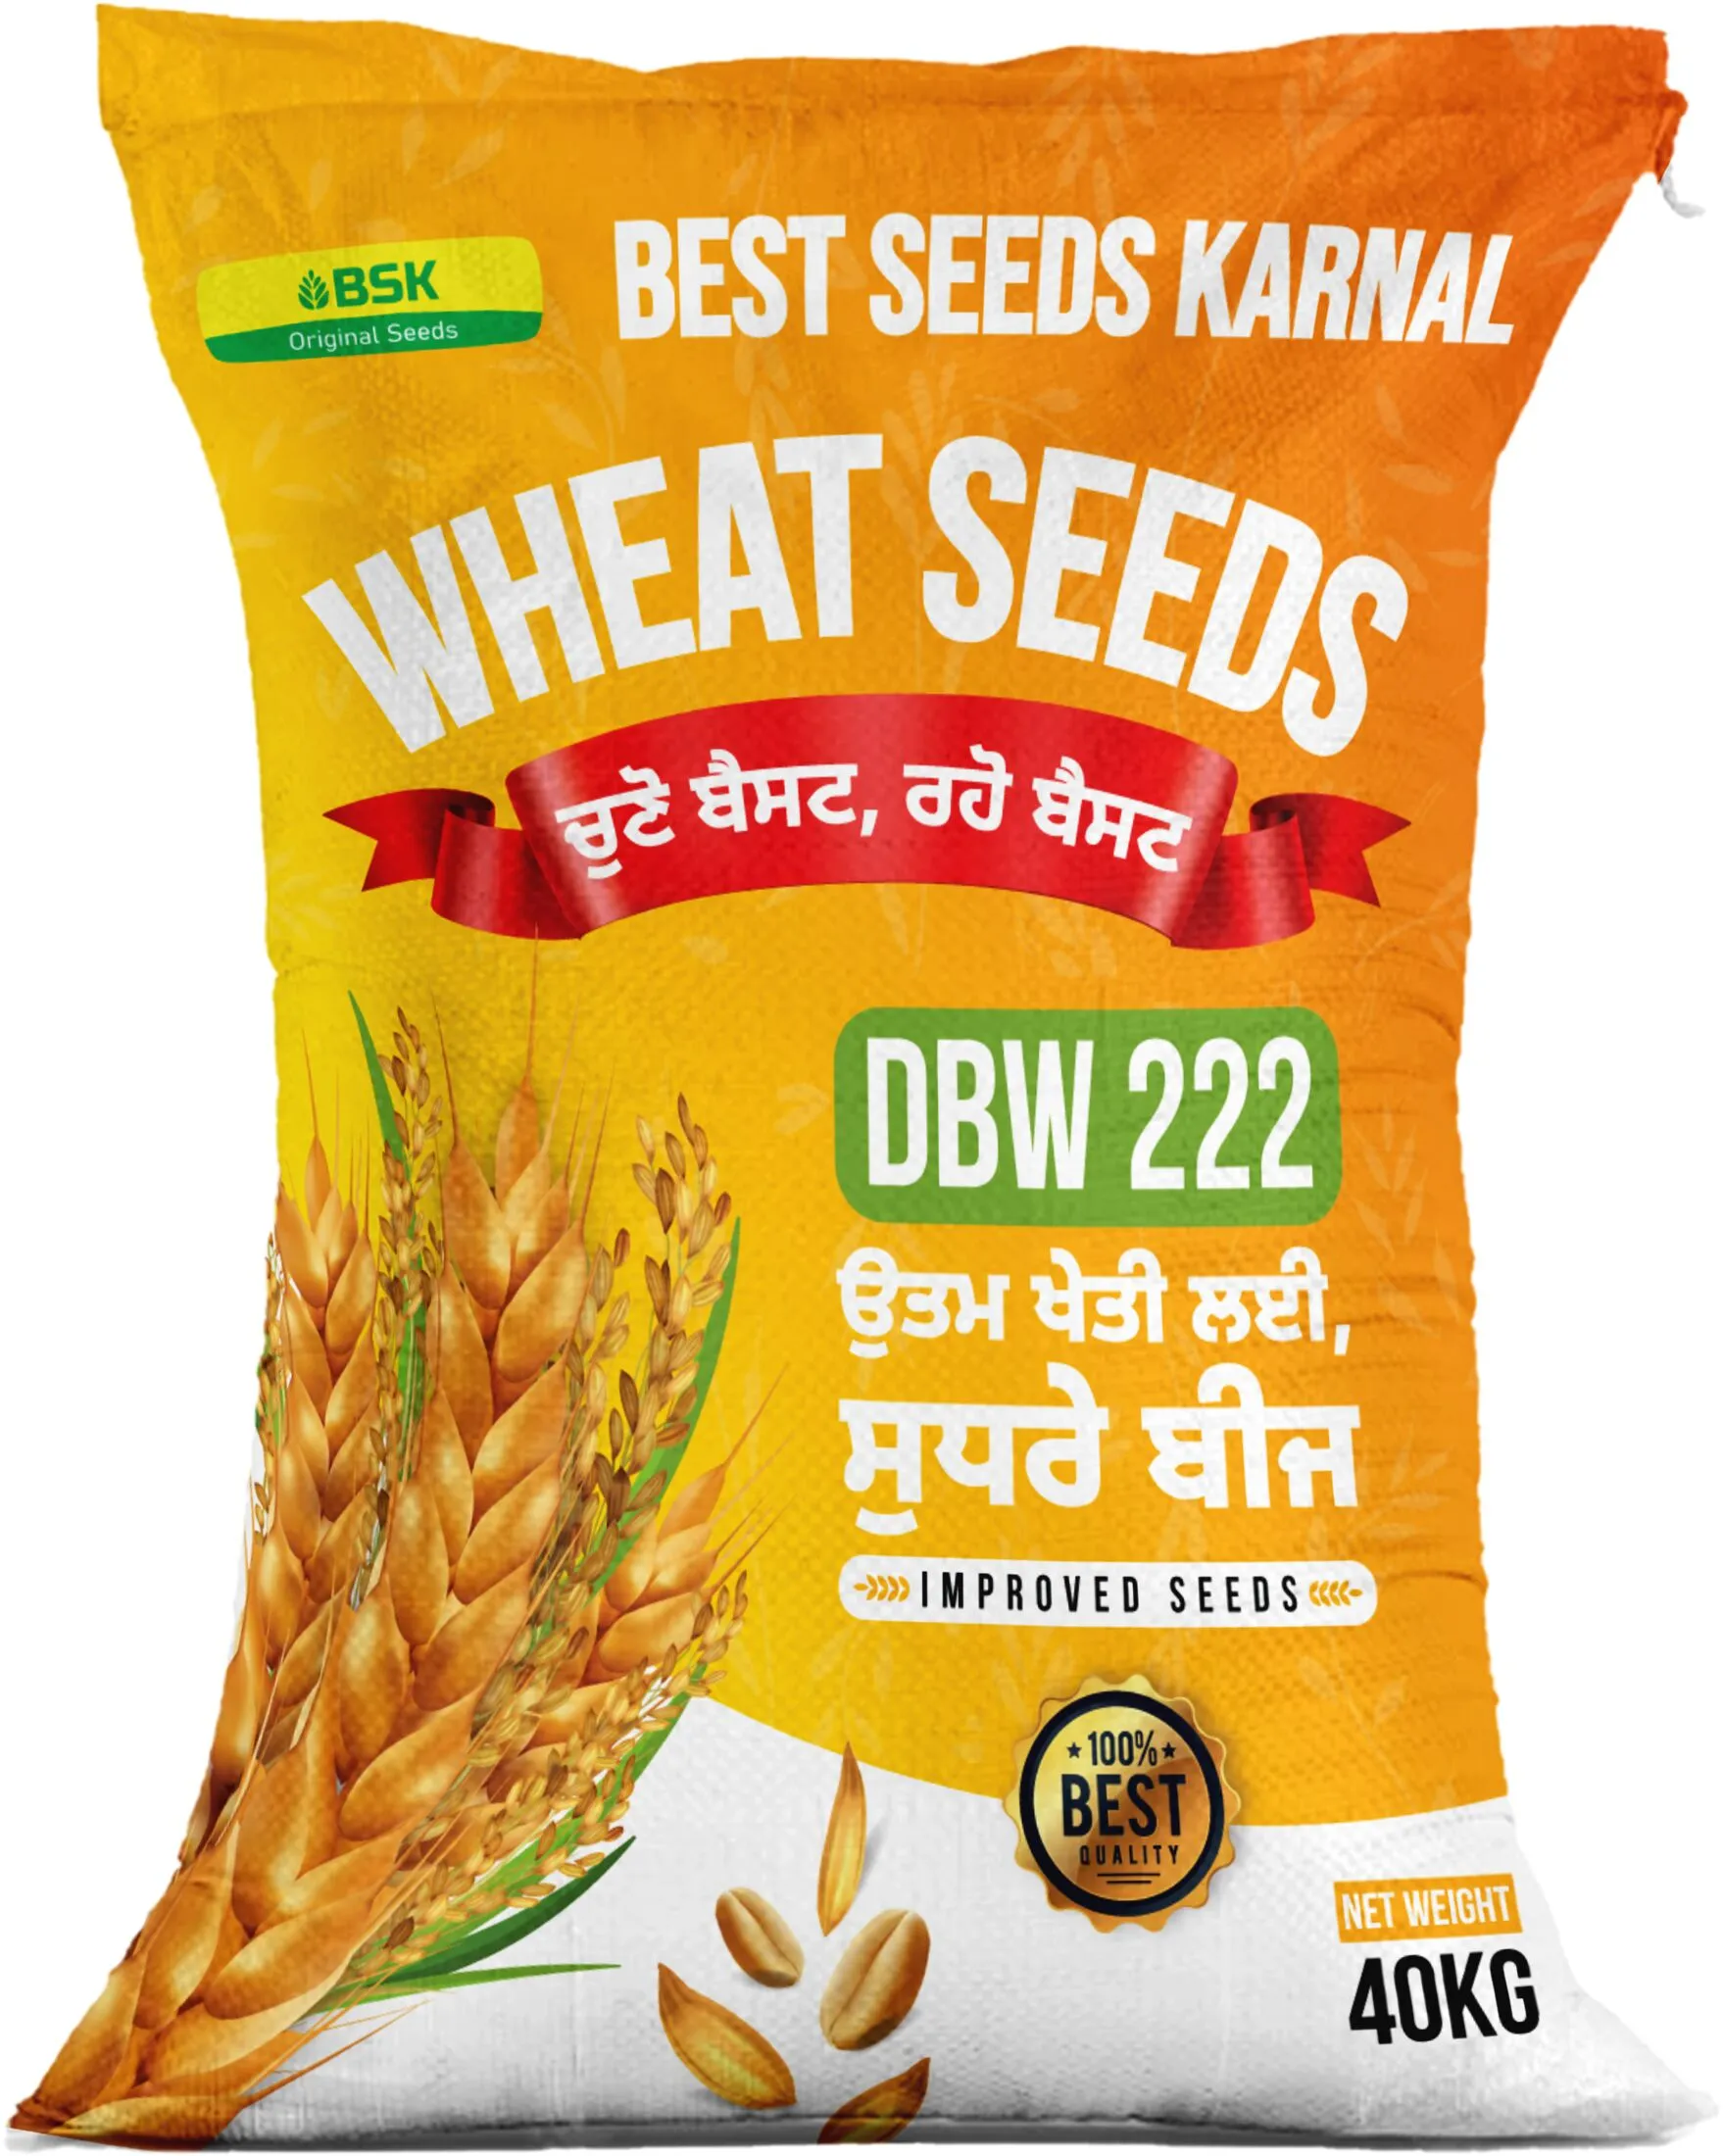 DBW 222 High Yielding Wheat Variety from Best seeds Karanl